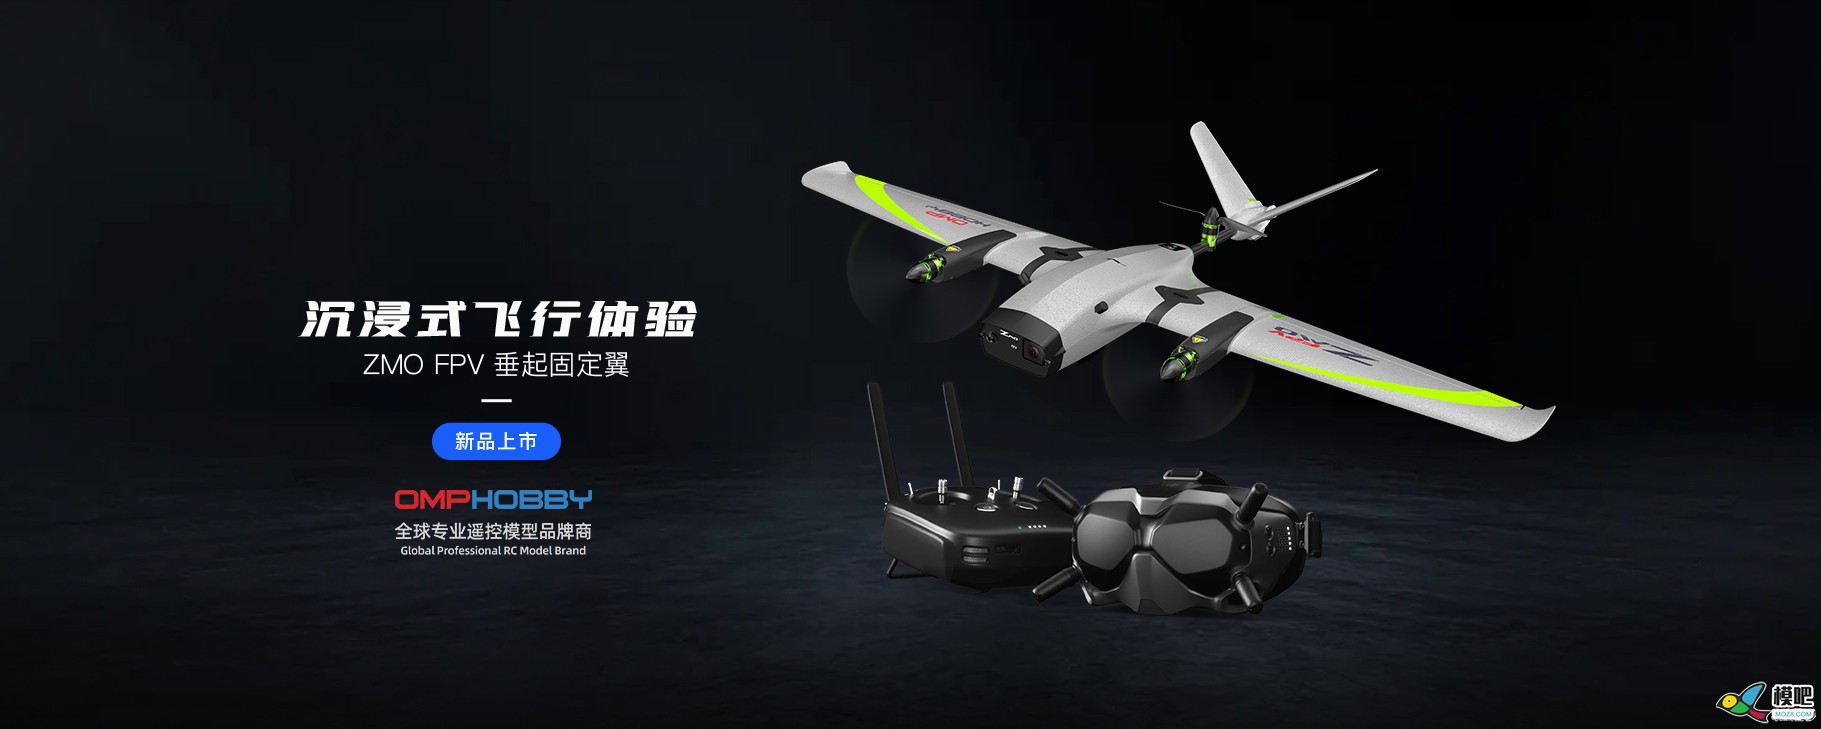 潮玩无人机-垂起固定翼FPV【ZMO】| 全新发售 无人机,航模,固定翼,飞手,飞行体验 作者:边锋领域 7539 